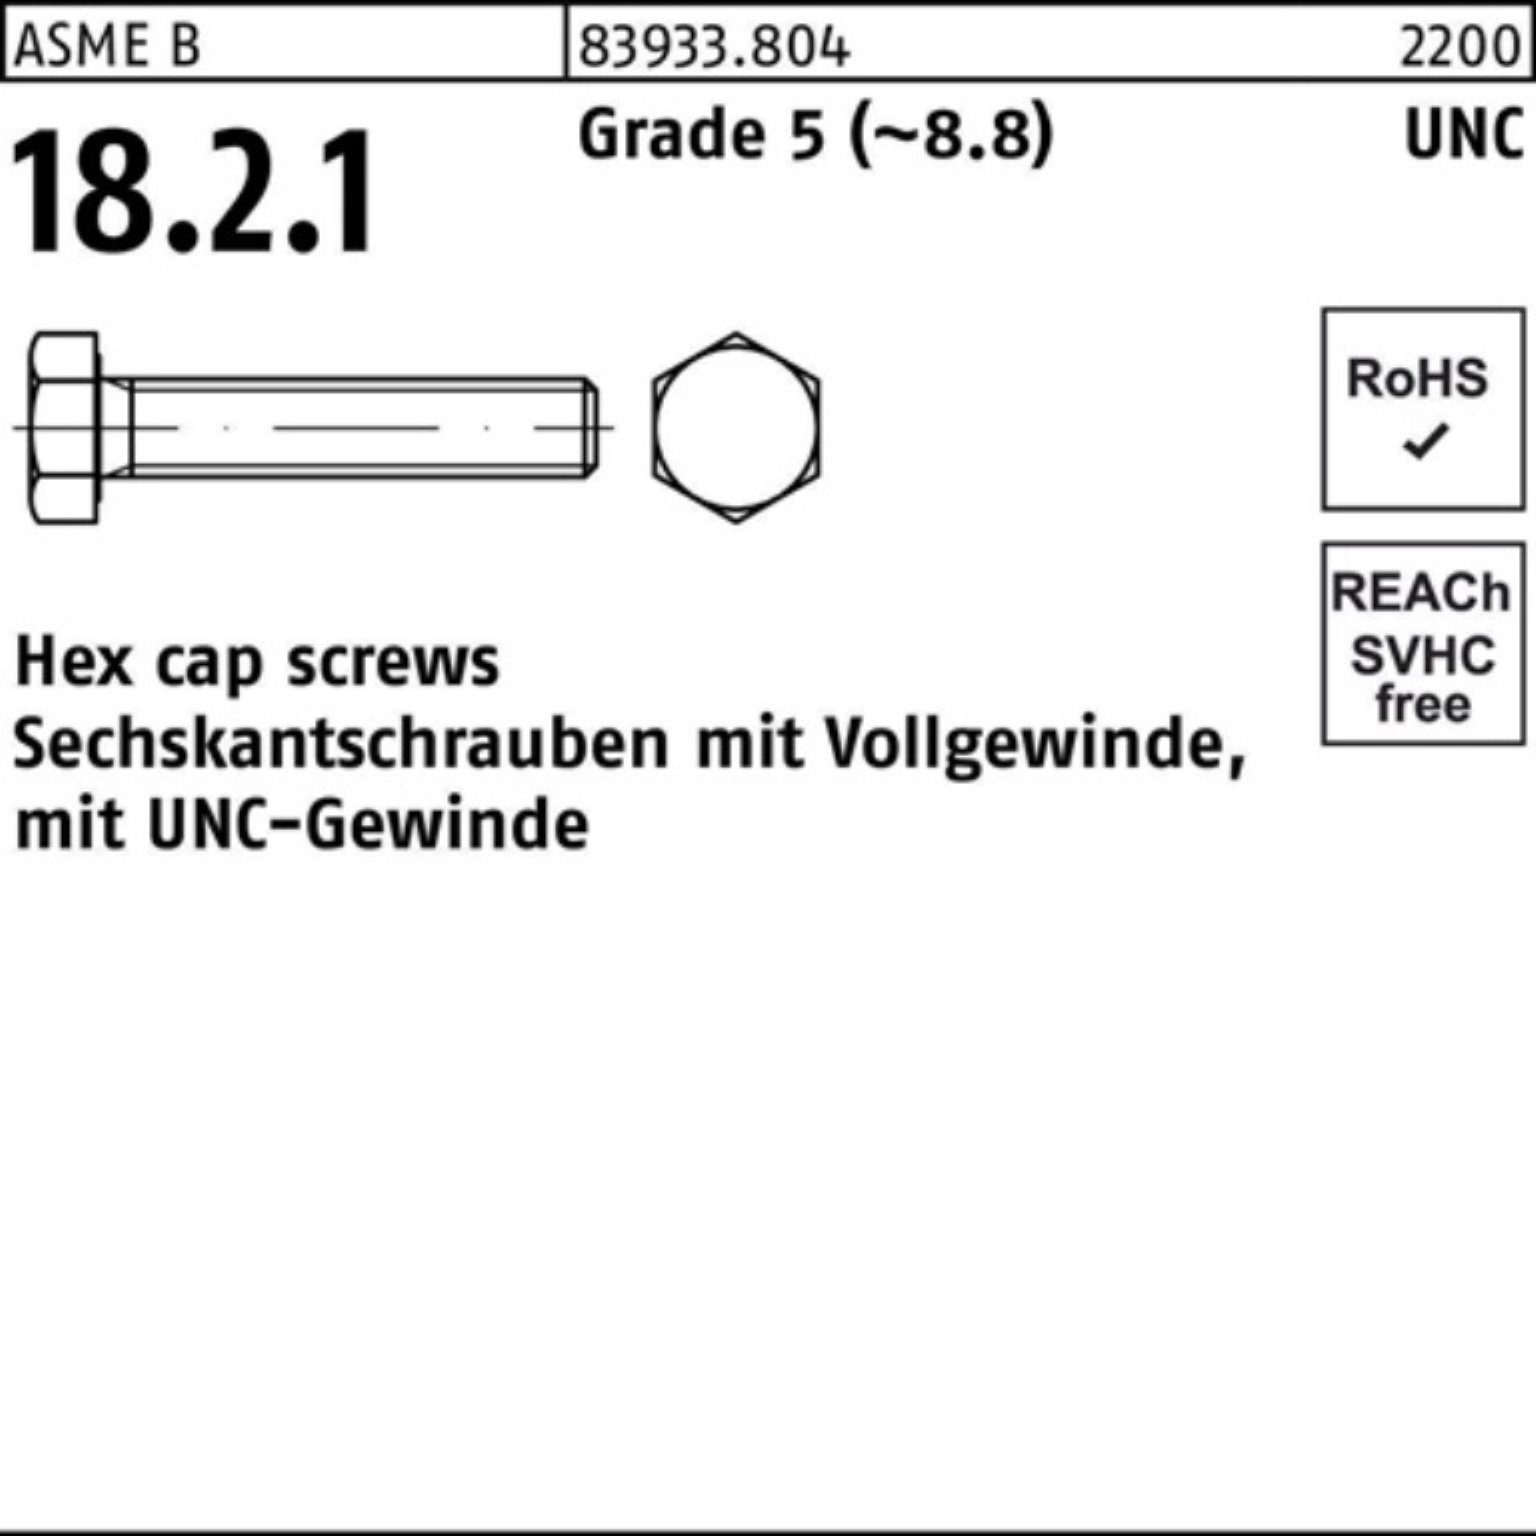 Reyher Sechskantschraube 100er Pack Sechskantschraube R 83933 UNC-Gewinde VG 3/4x 1 3/4 Grade 5